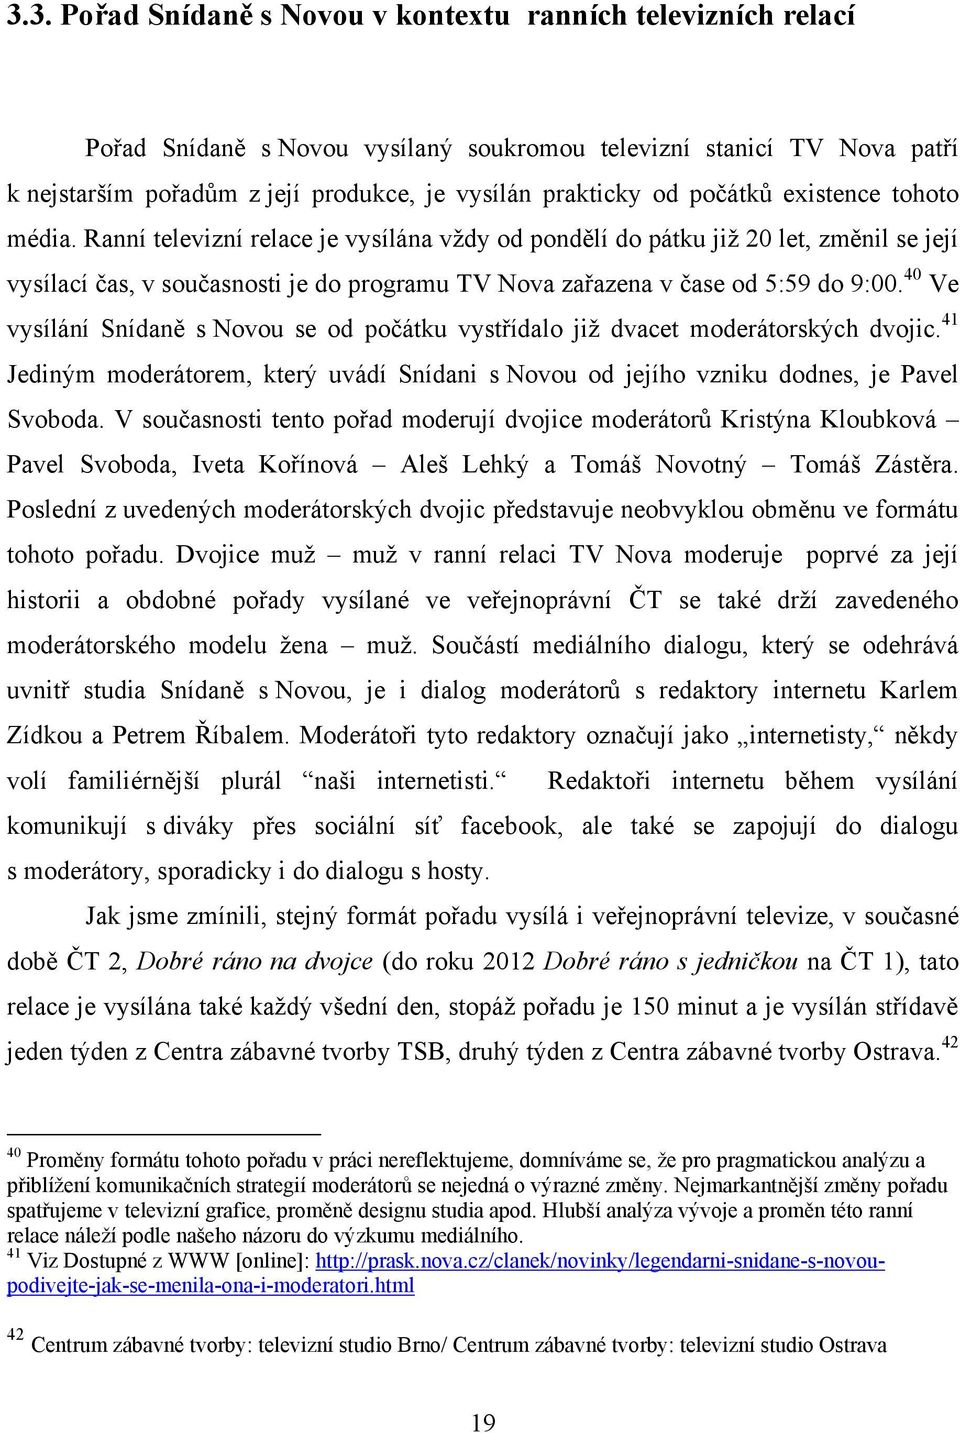 Ranní televizní relace je vysílána vţdy od pondělí do pátku jiţ 20 let, změnil se její vysílací čas, v současnosti je do programu TV Nova zařazena v čase od 5:59 do 9:00.